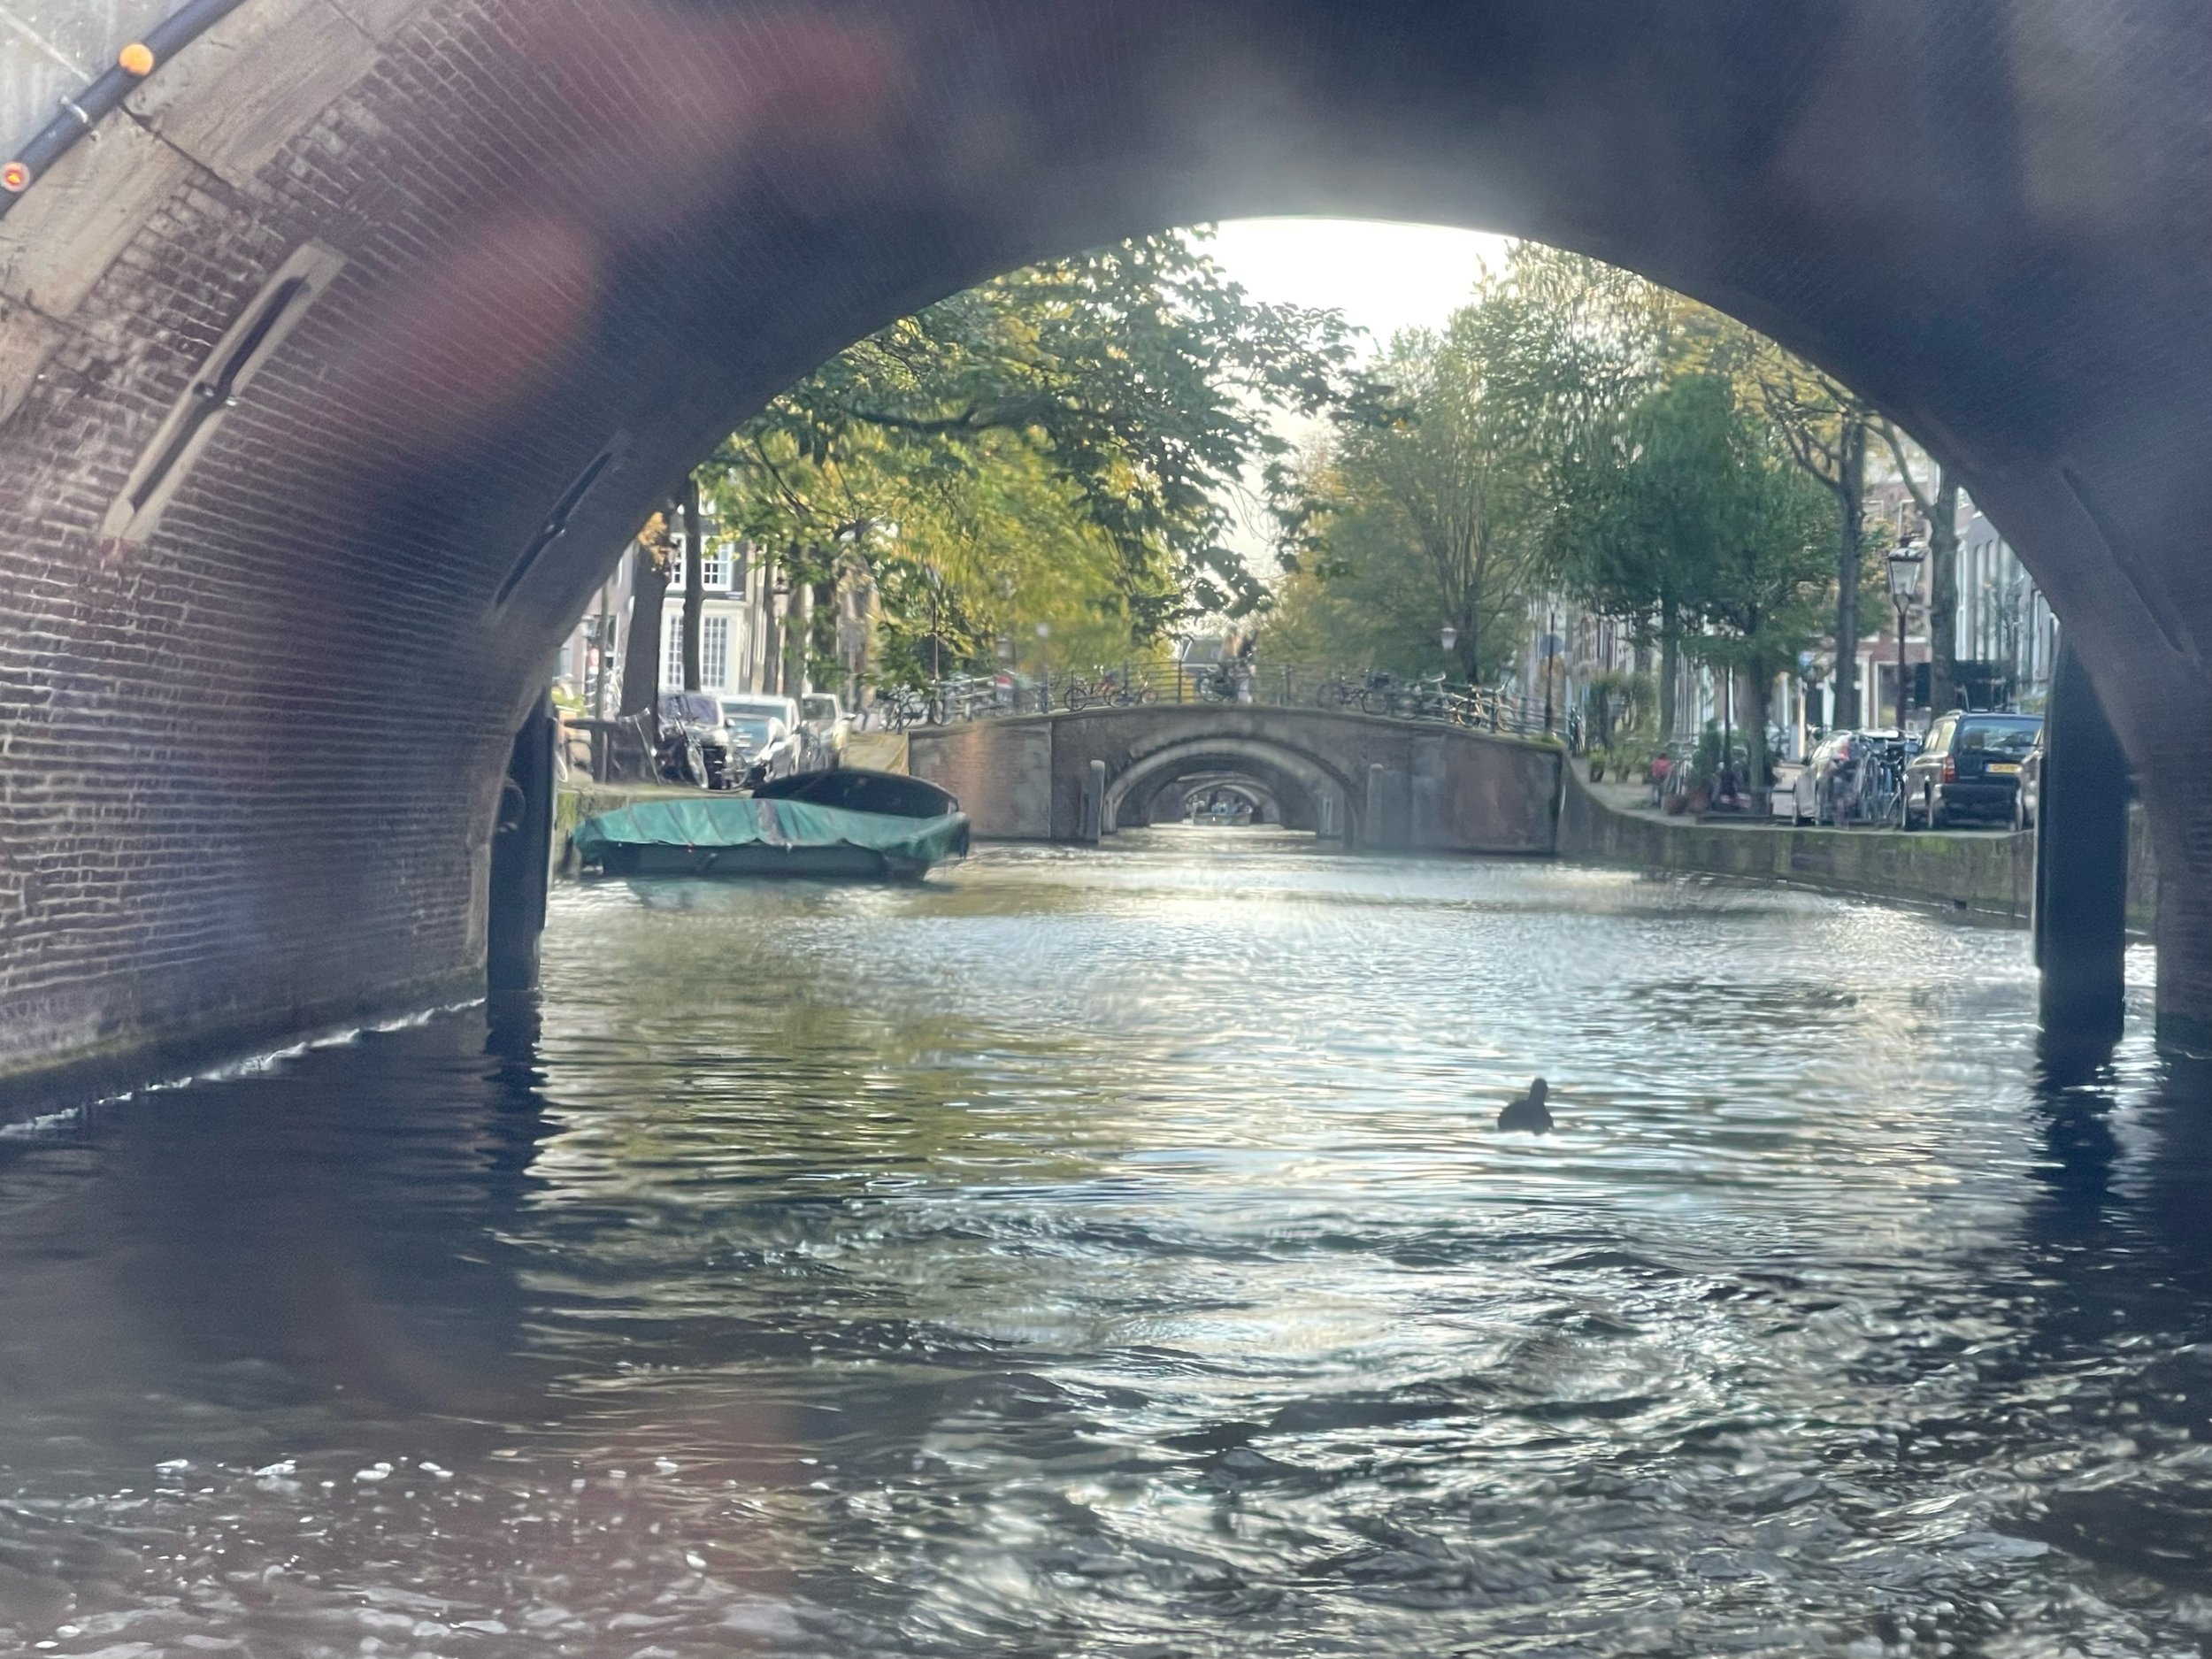   The “Seven Bridges” canal  